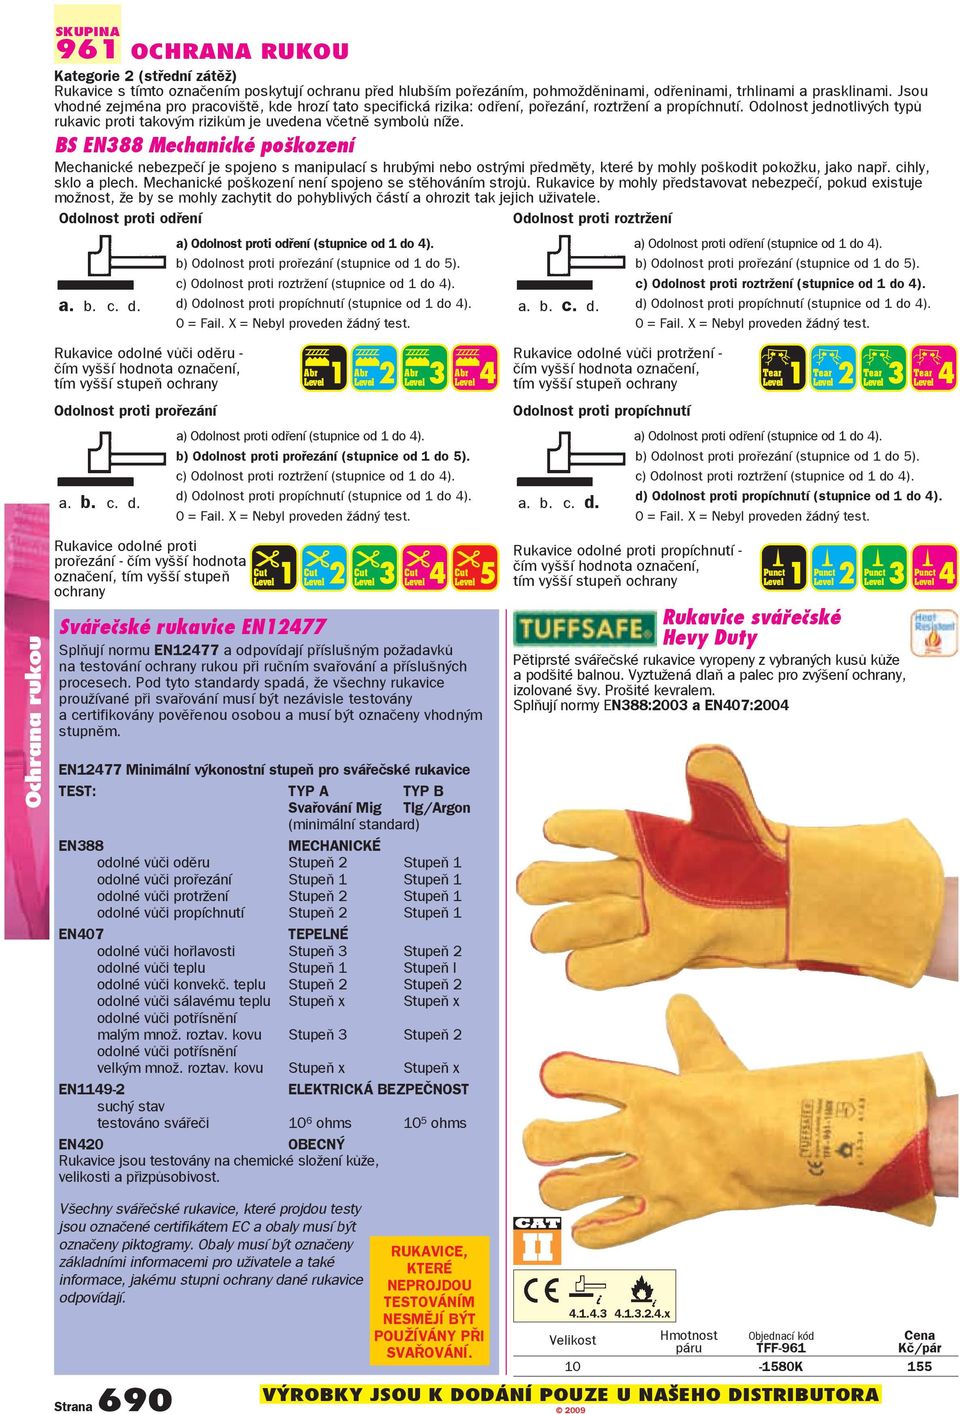 Odolnost jednotlivých typů rukavic proti takovým rizikům je uvedena včetně symbolů níže.